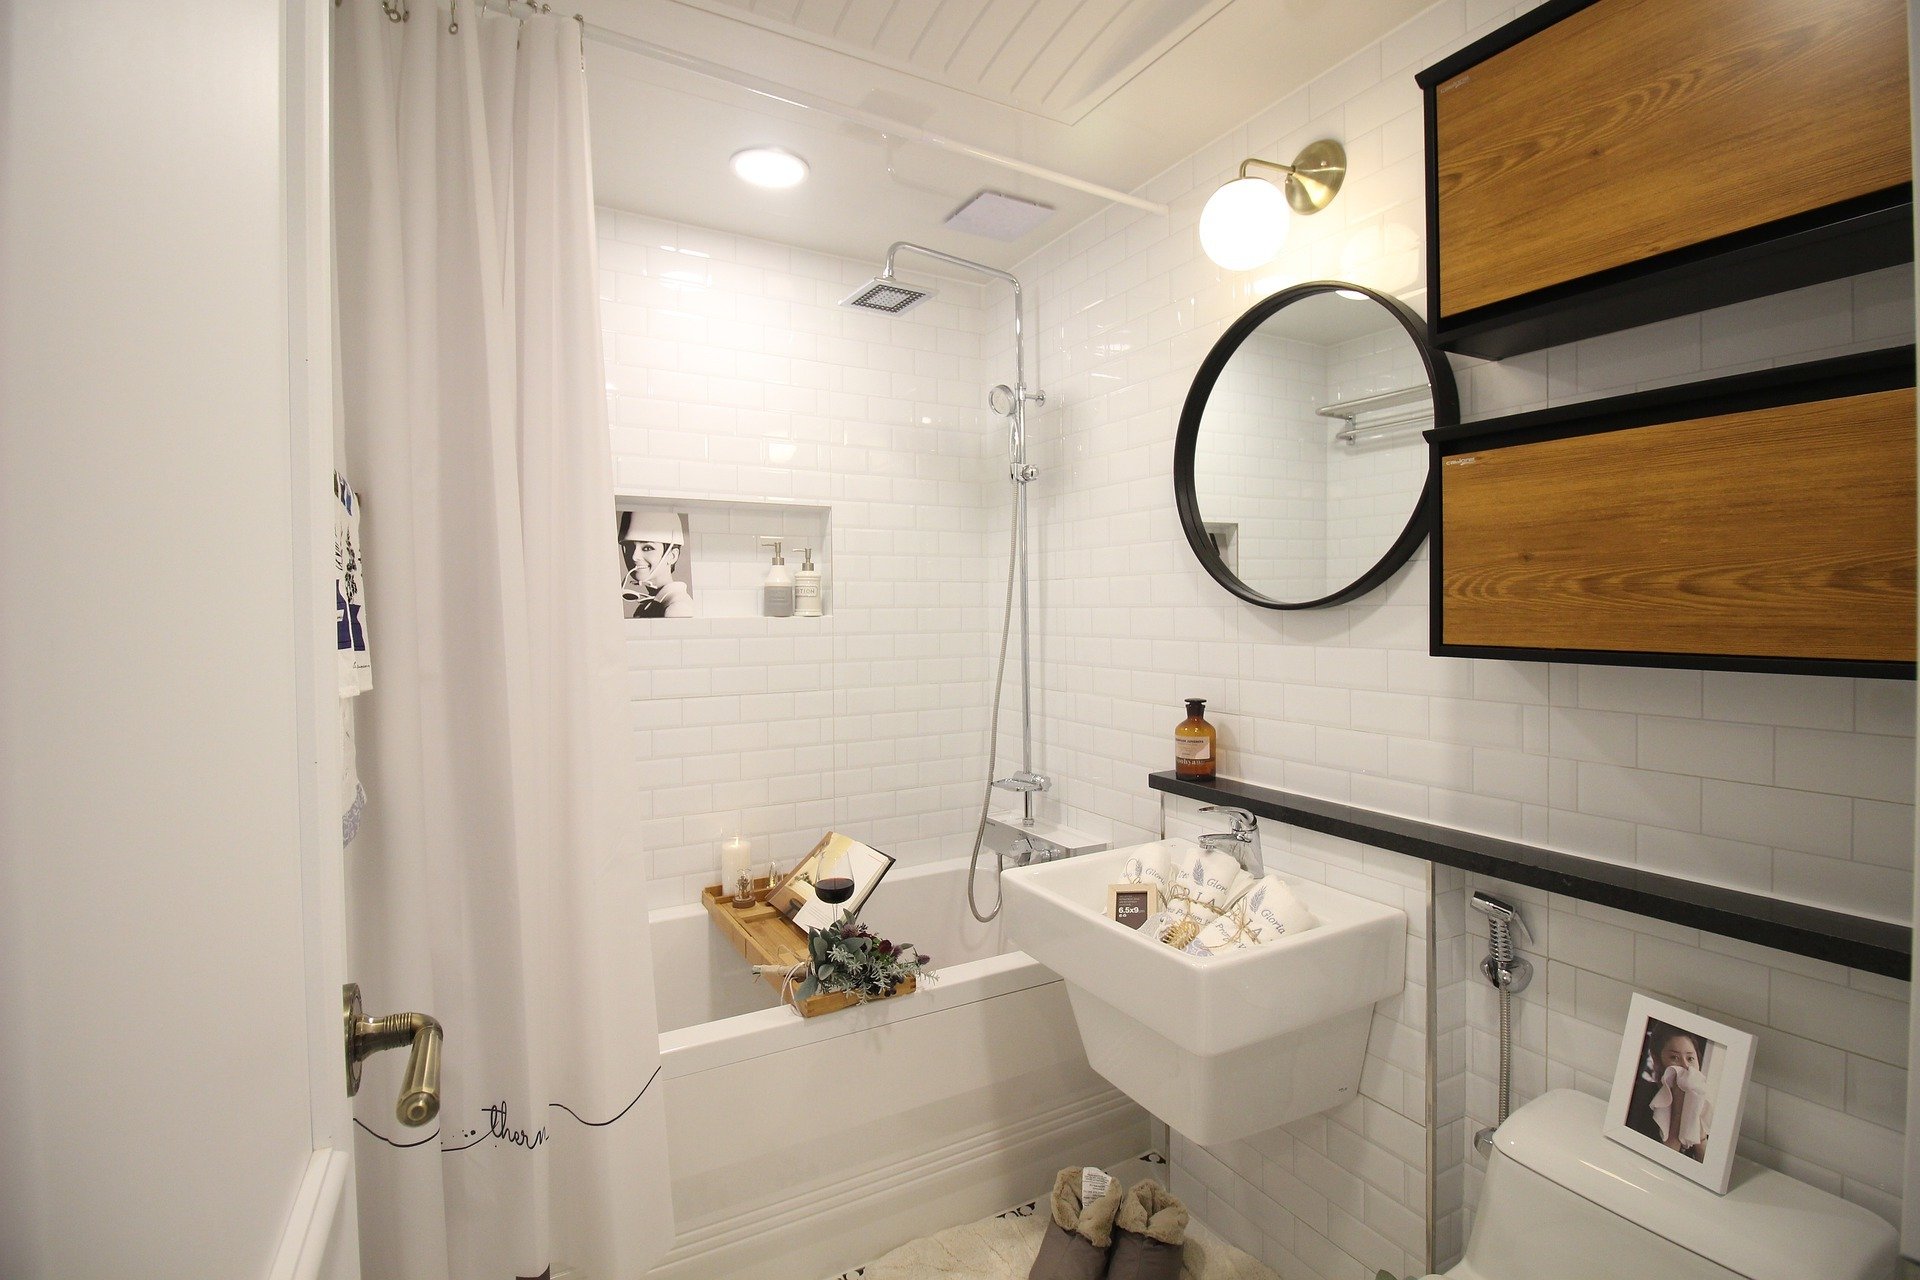 Les meilleures idées pour les petites salles de bains alliant charme et praticité.